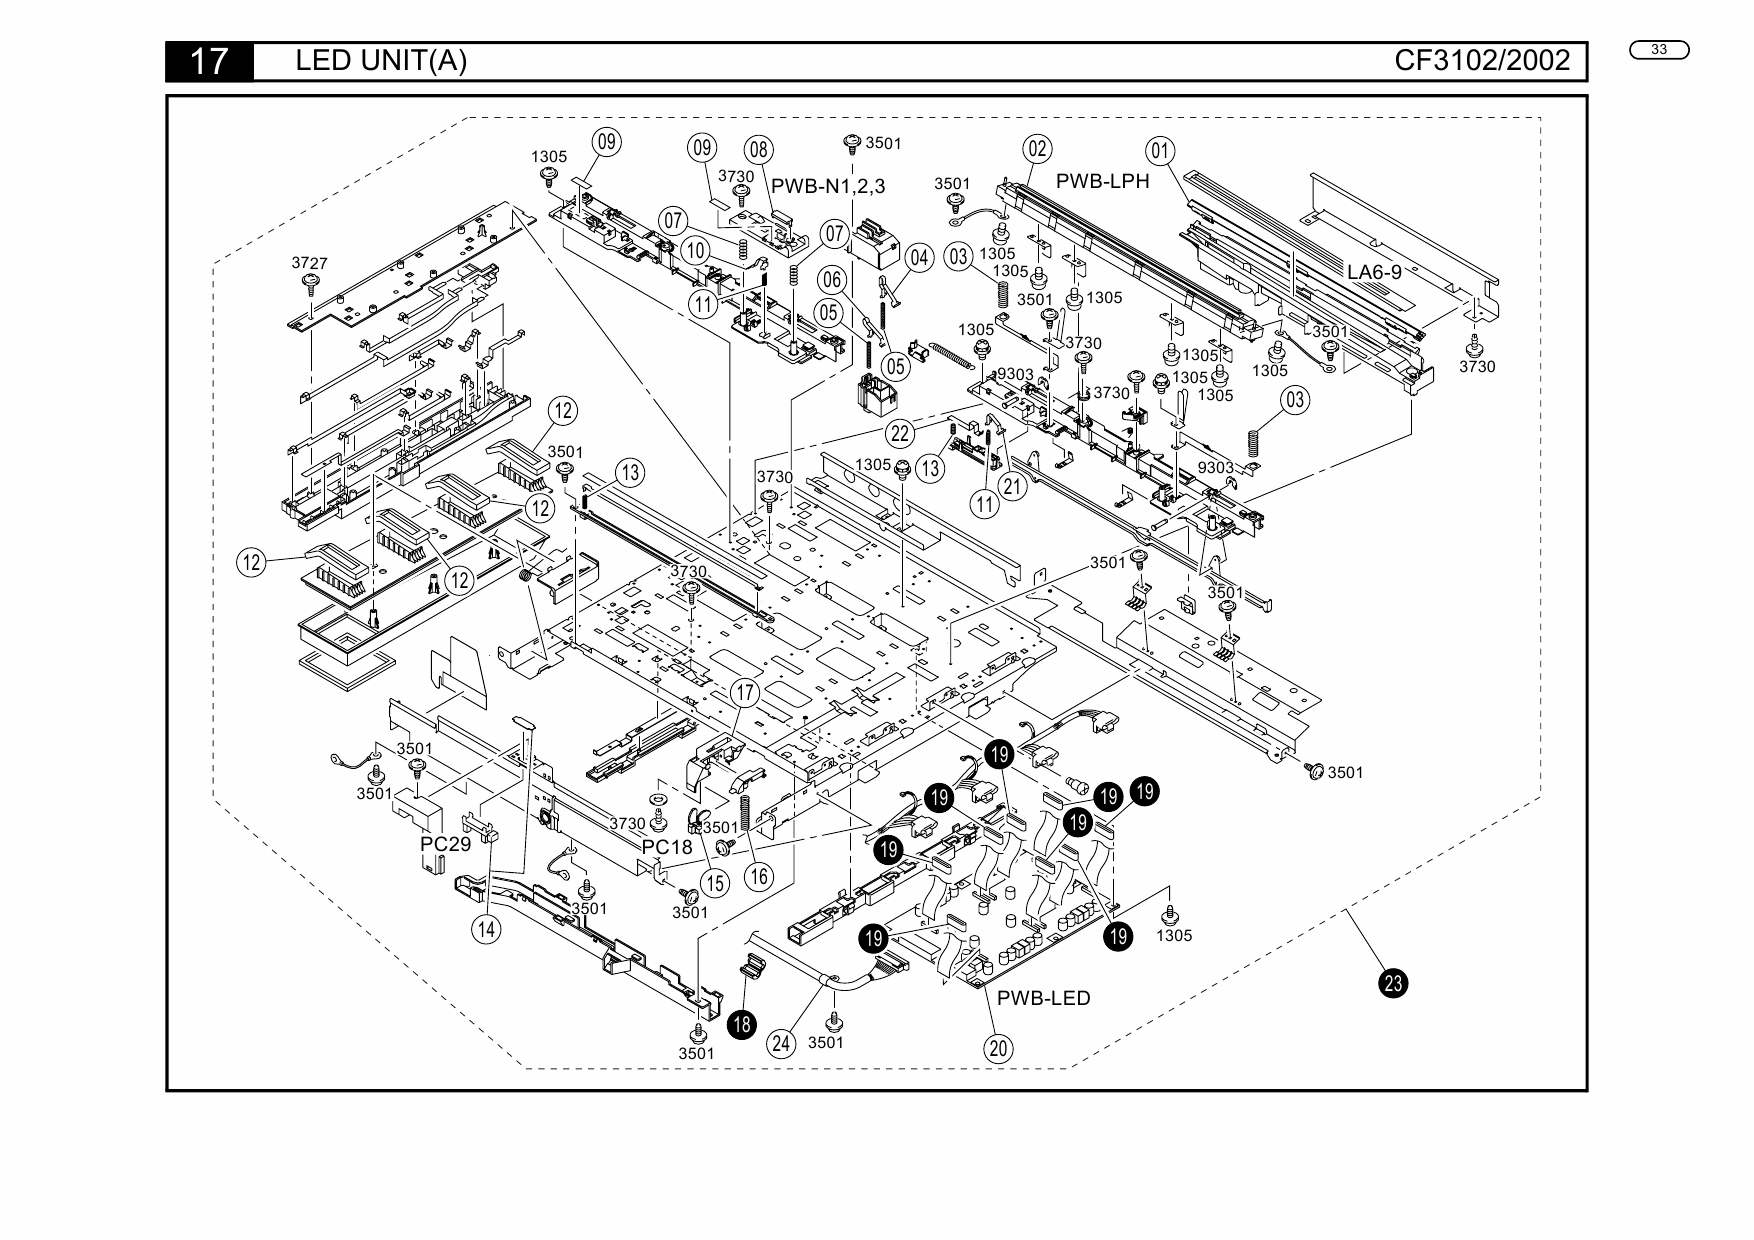 Konica-Minolta Options CF3102 CF2002 SC-1 AD-14 Parts Manual-5